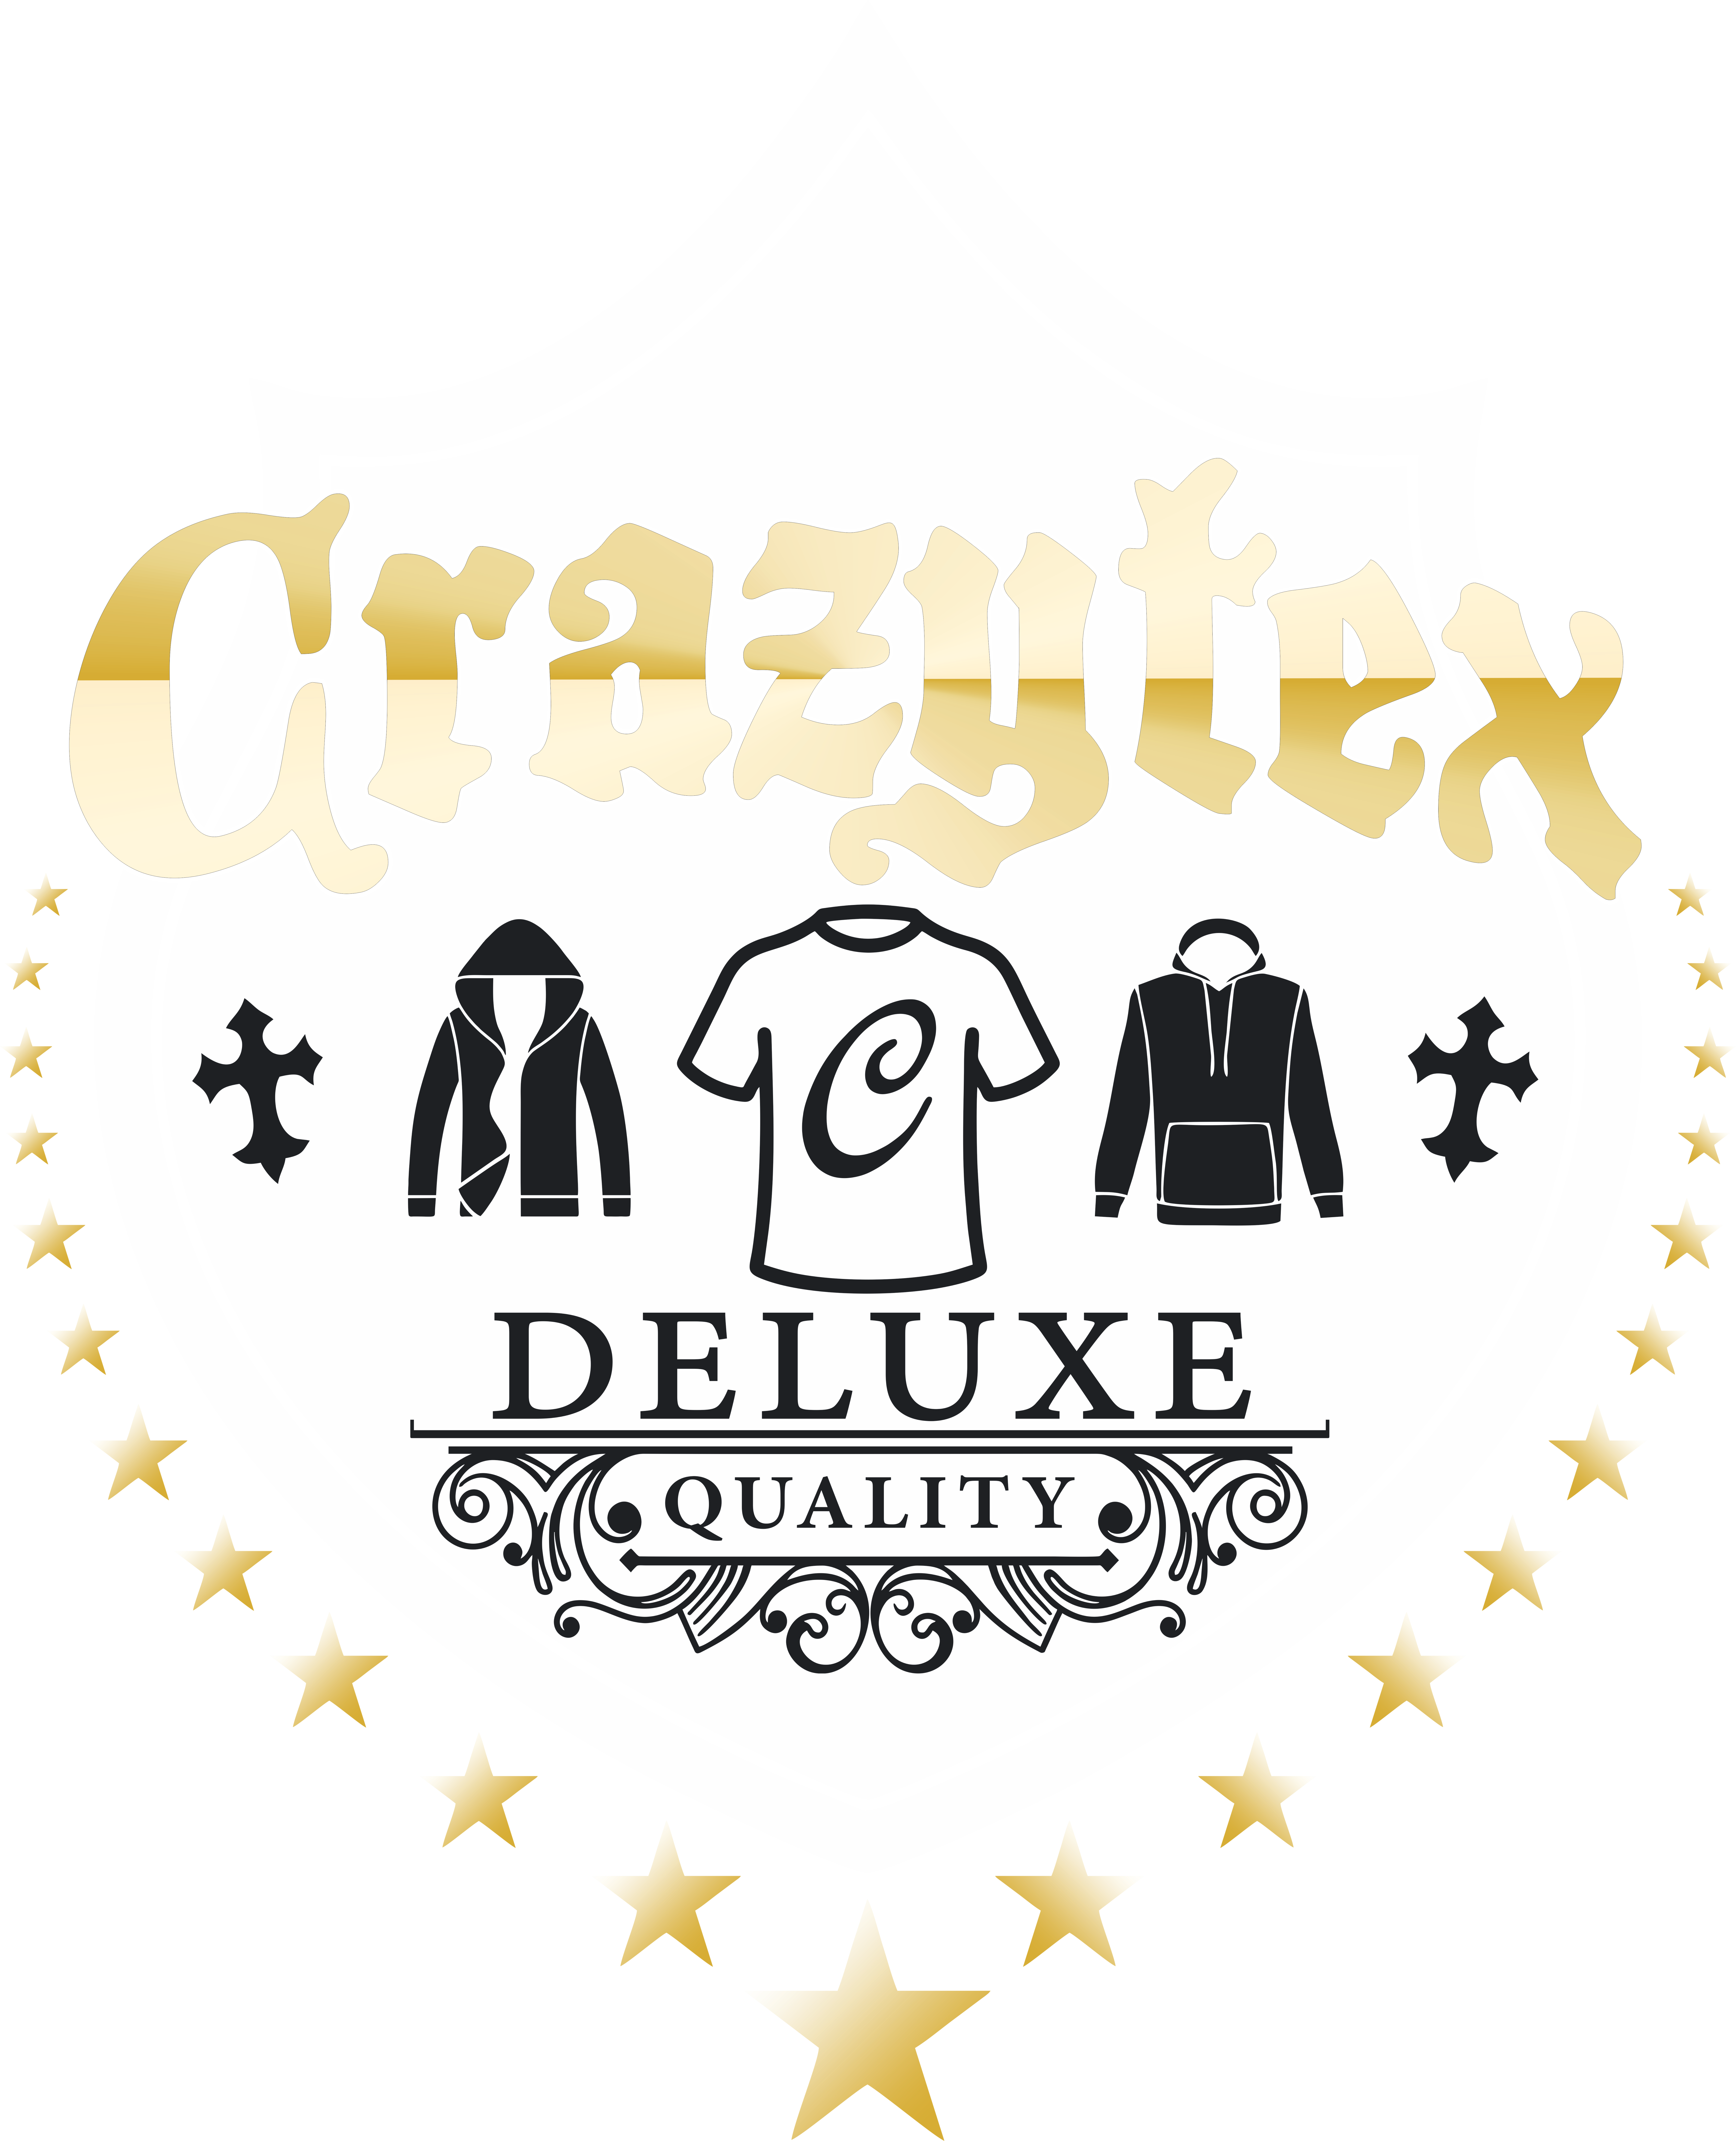 crazytex.com – Werbedruck / Textildruck / Grafikdesign